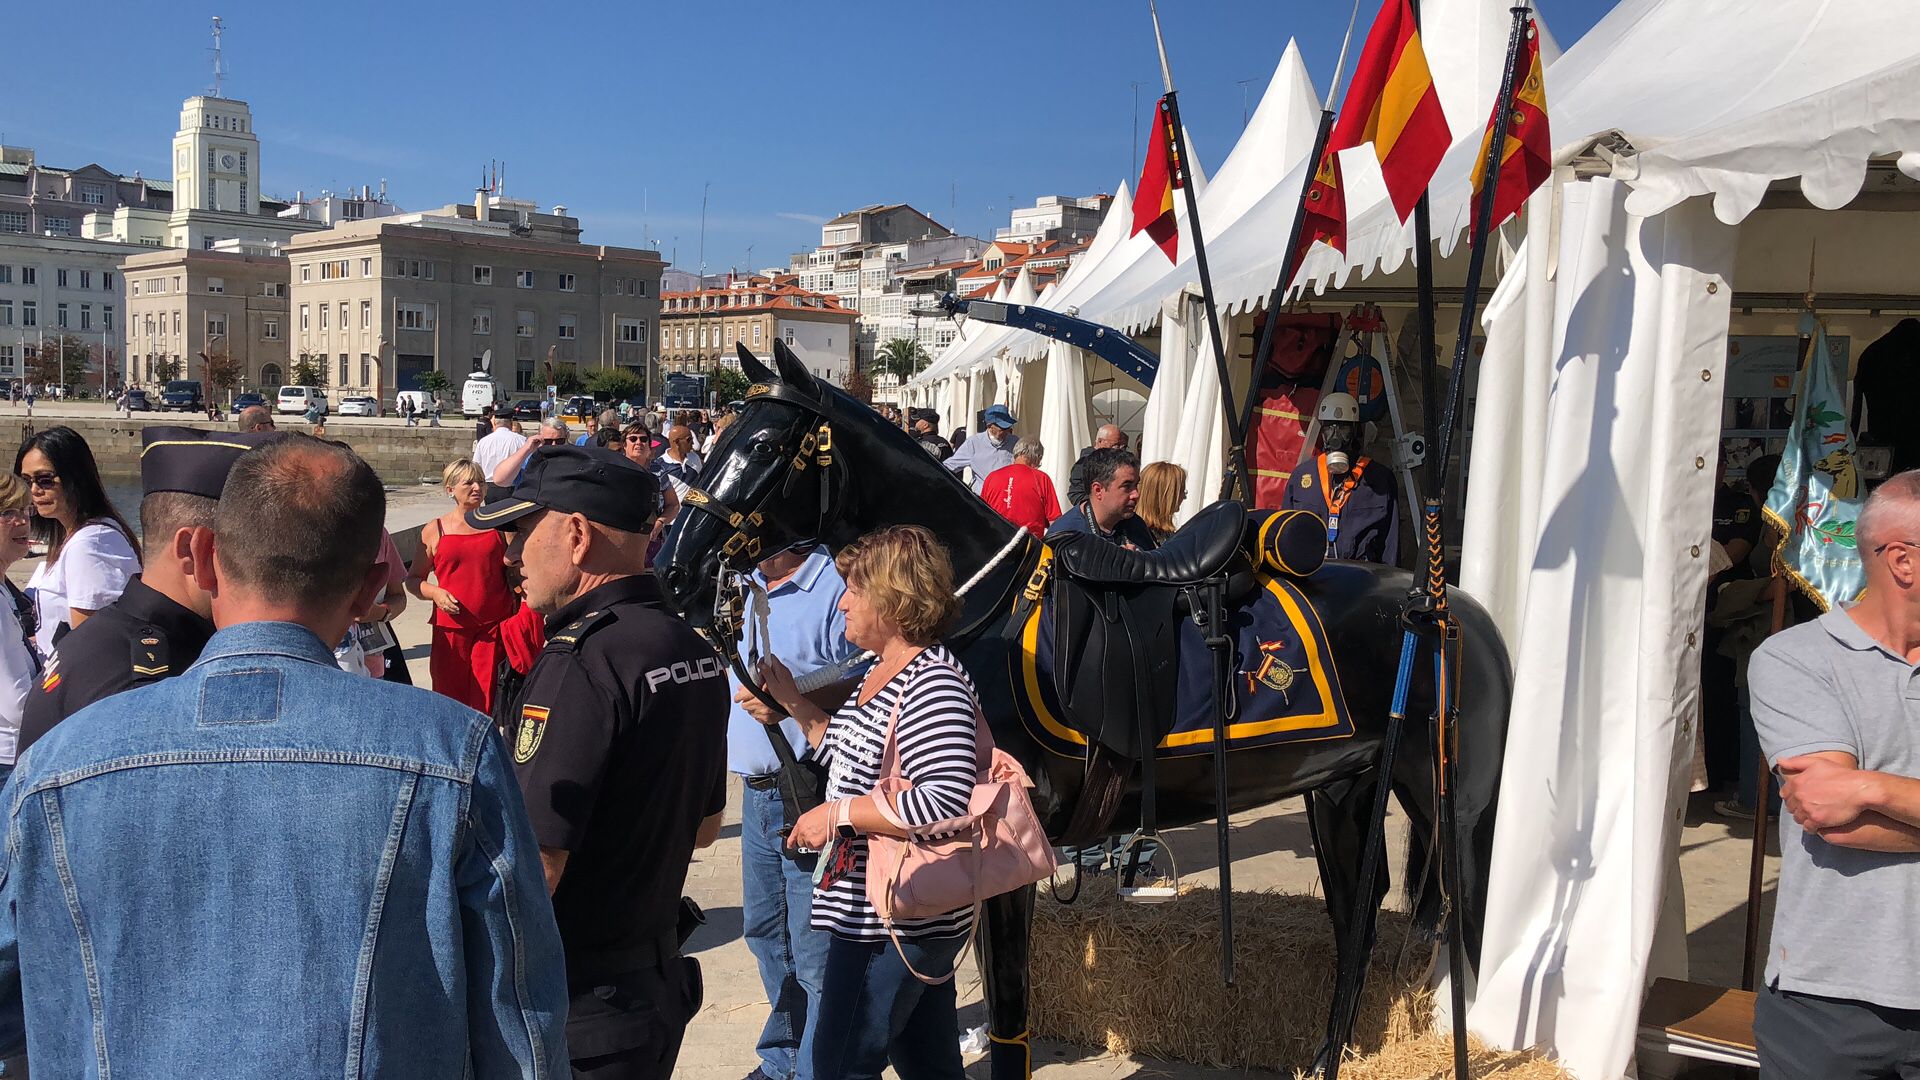 Actos centrales del día de la Policía Nacional en A Coruña